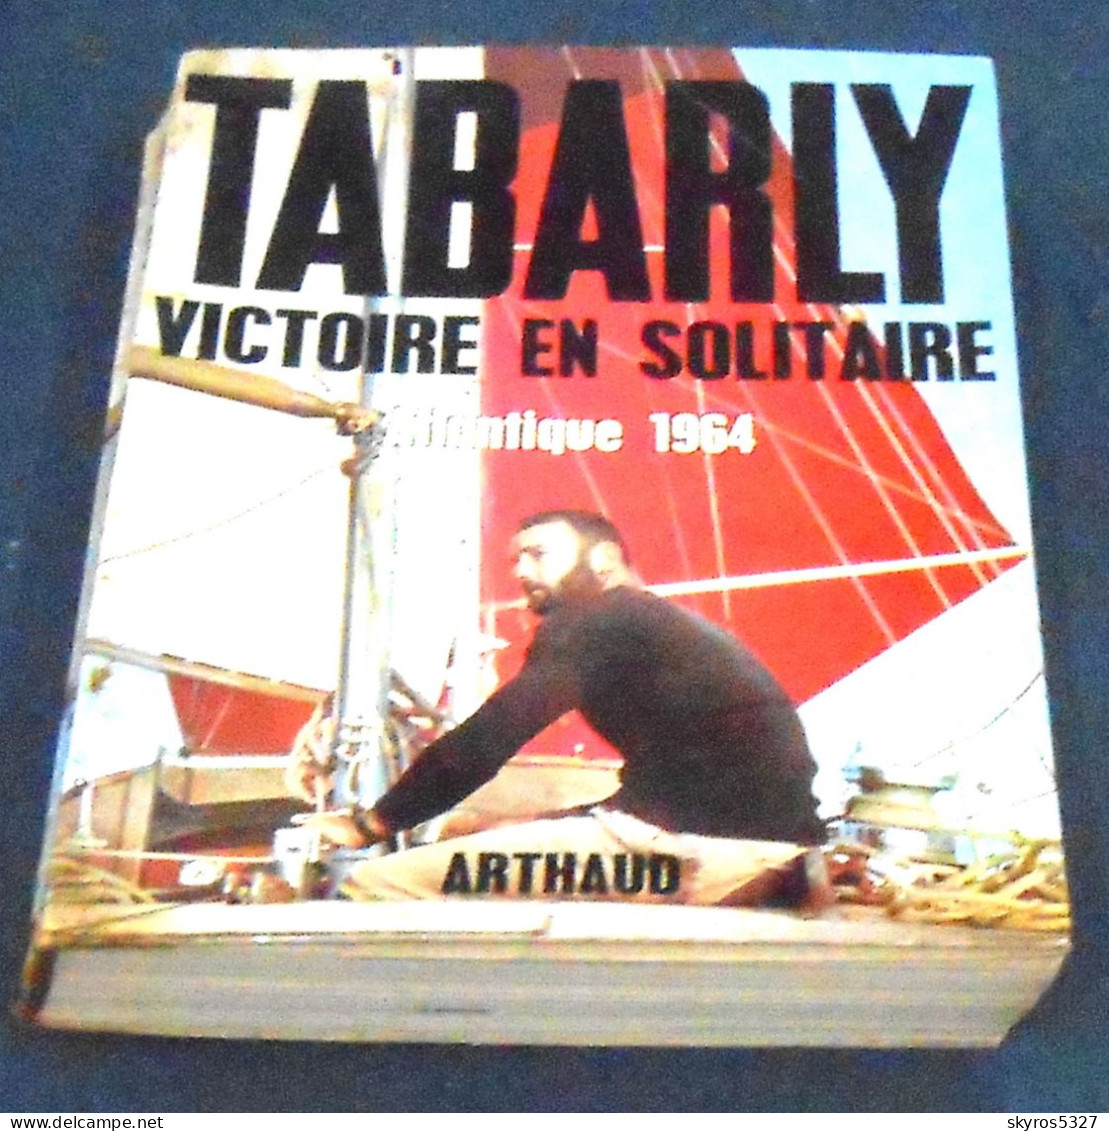 Victoire En Solitaire Atlantique 1964 - Eric Tabarly - Bateau